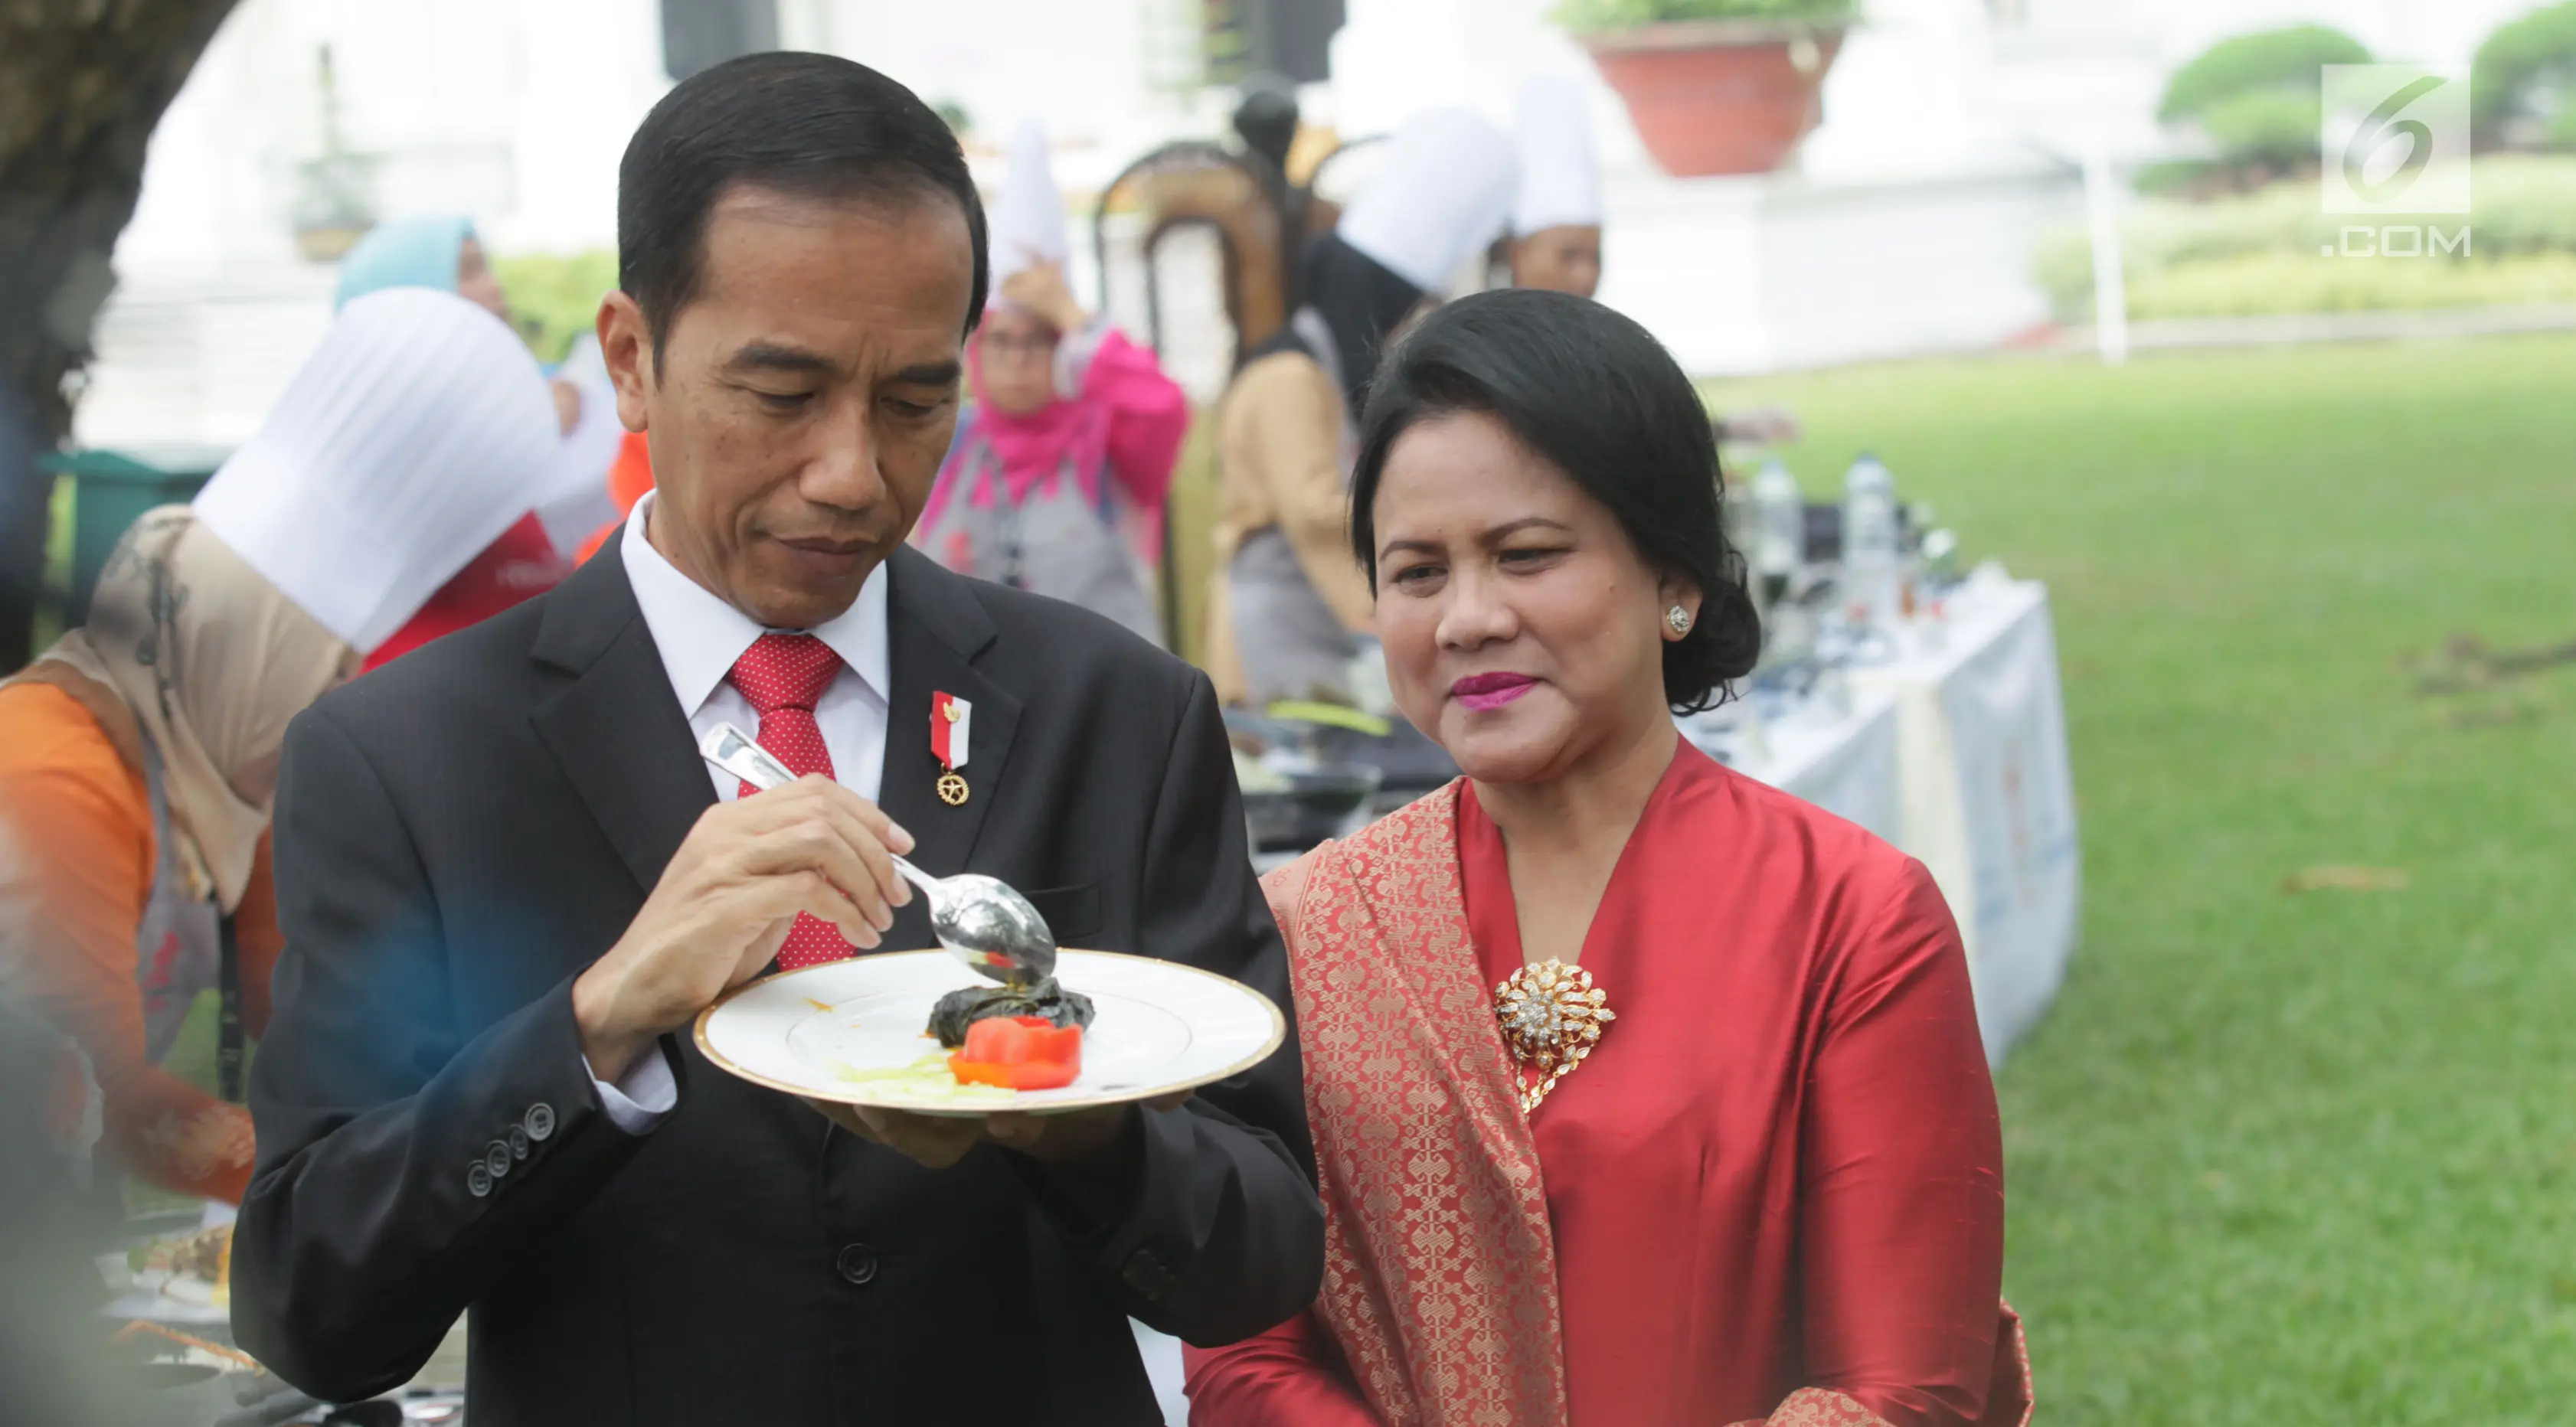 Presiden Jokowi dan Ibu Negara, Iriana Joko Widodo mencicipi masakan Pemenang Lomba Masak Ikan Nusantara 2017 di halaman Istana Kepresidenan, Jakarta, Selasa (15/8). Lomba ini dalam rangka 72 tahun Kemerdekaan Republik Indonesia. (Liputan6.com/Pool)